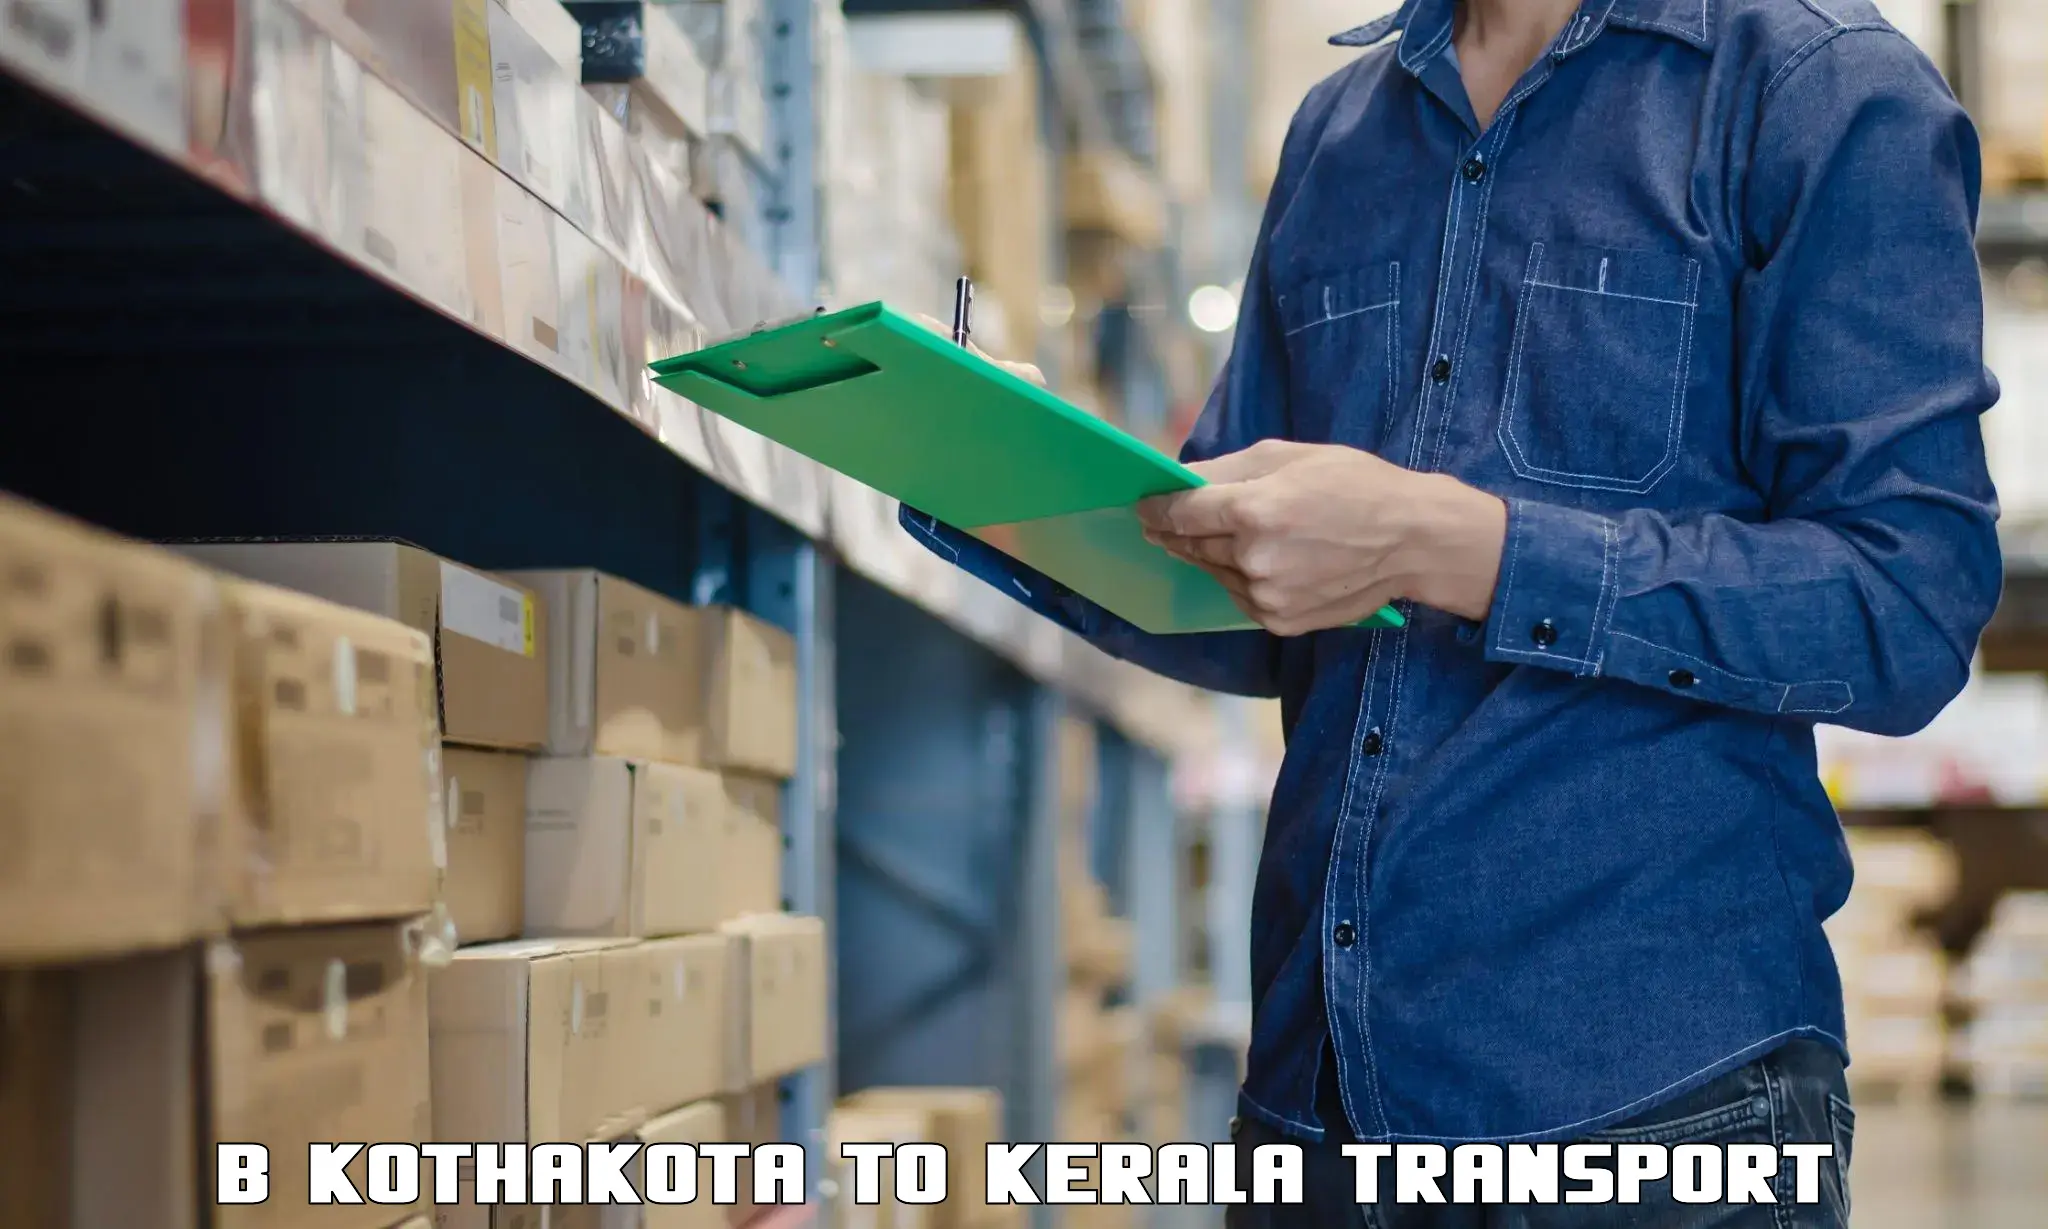 Air freight transport services B Kothakota to Irinjalakuda